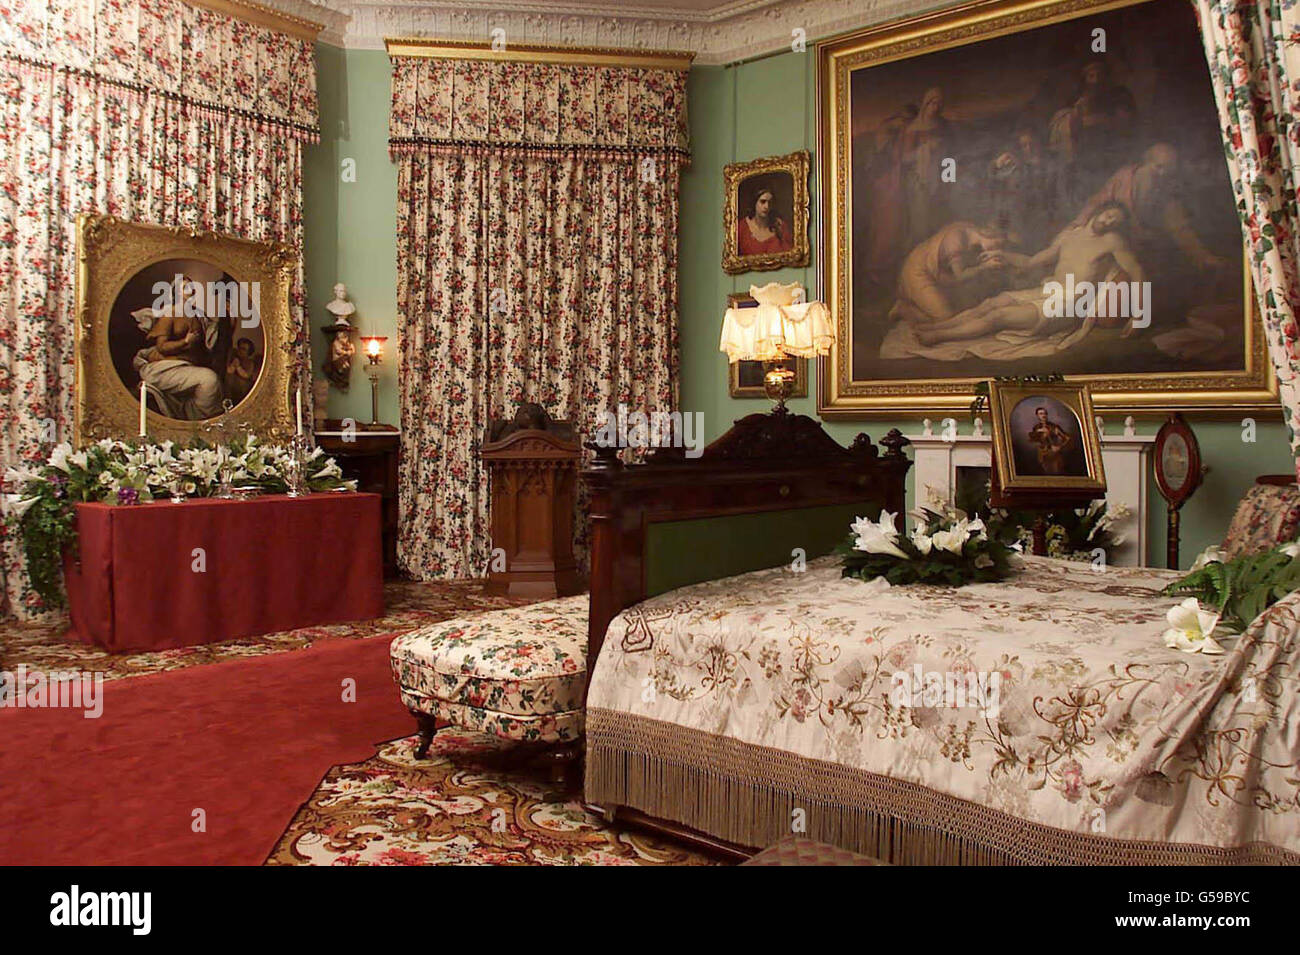 La chambre de la reine Victoria à la maison Osborne, sa maison sur l'île de Wight. La salle a été recréée comme elle l'était après sa mort le 22/01/1901, dans le cadre d'une rénovation complète de la Maison Osborne pour commémorer un siècle depuis sa mort. * Victoria était le plus long monarque de la Grande-Bretagne. Le lit est décoré de lilas et de palmiers. Un alter est installé de l'autre côté de la pièce de la même façon que ses enfants pour la pleurer avec des effigies de Victoria et d'Albert. La plupart des articles proviennent de la collection royale. Banque D'Images